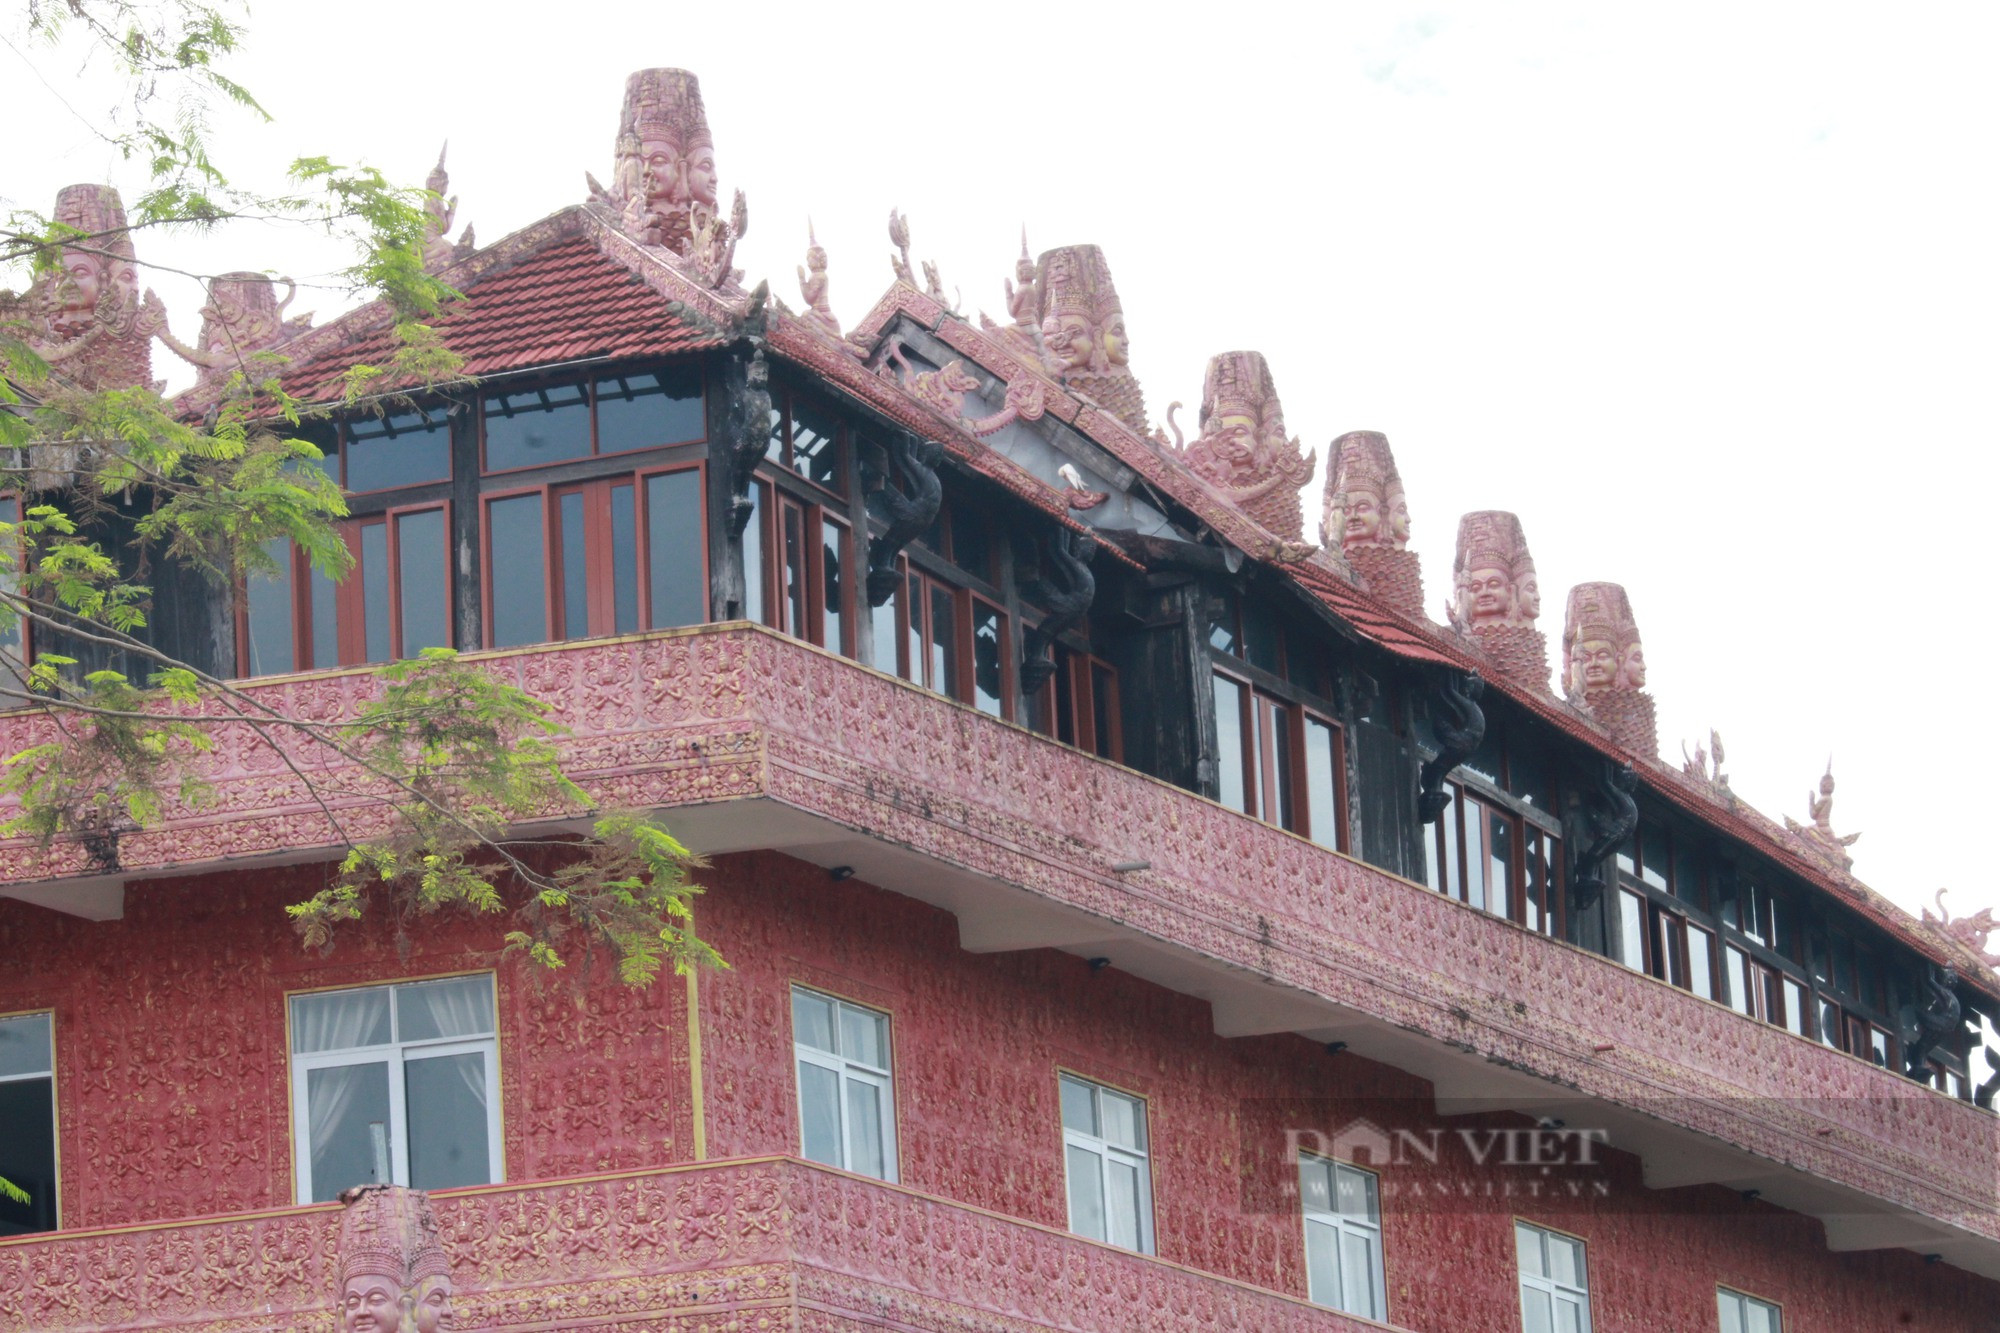 Kiến trúc độc đáo tại Pháp viện Thánh Sơn ở Khánh Hòa - Ảnh 9.